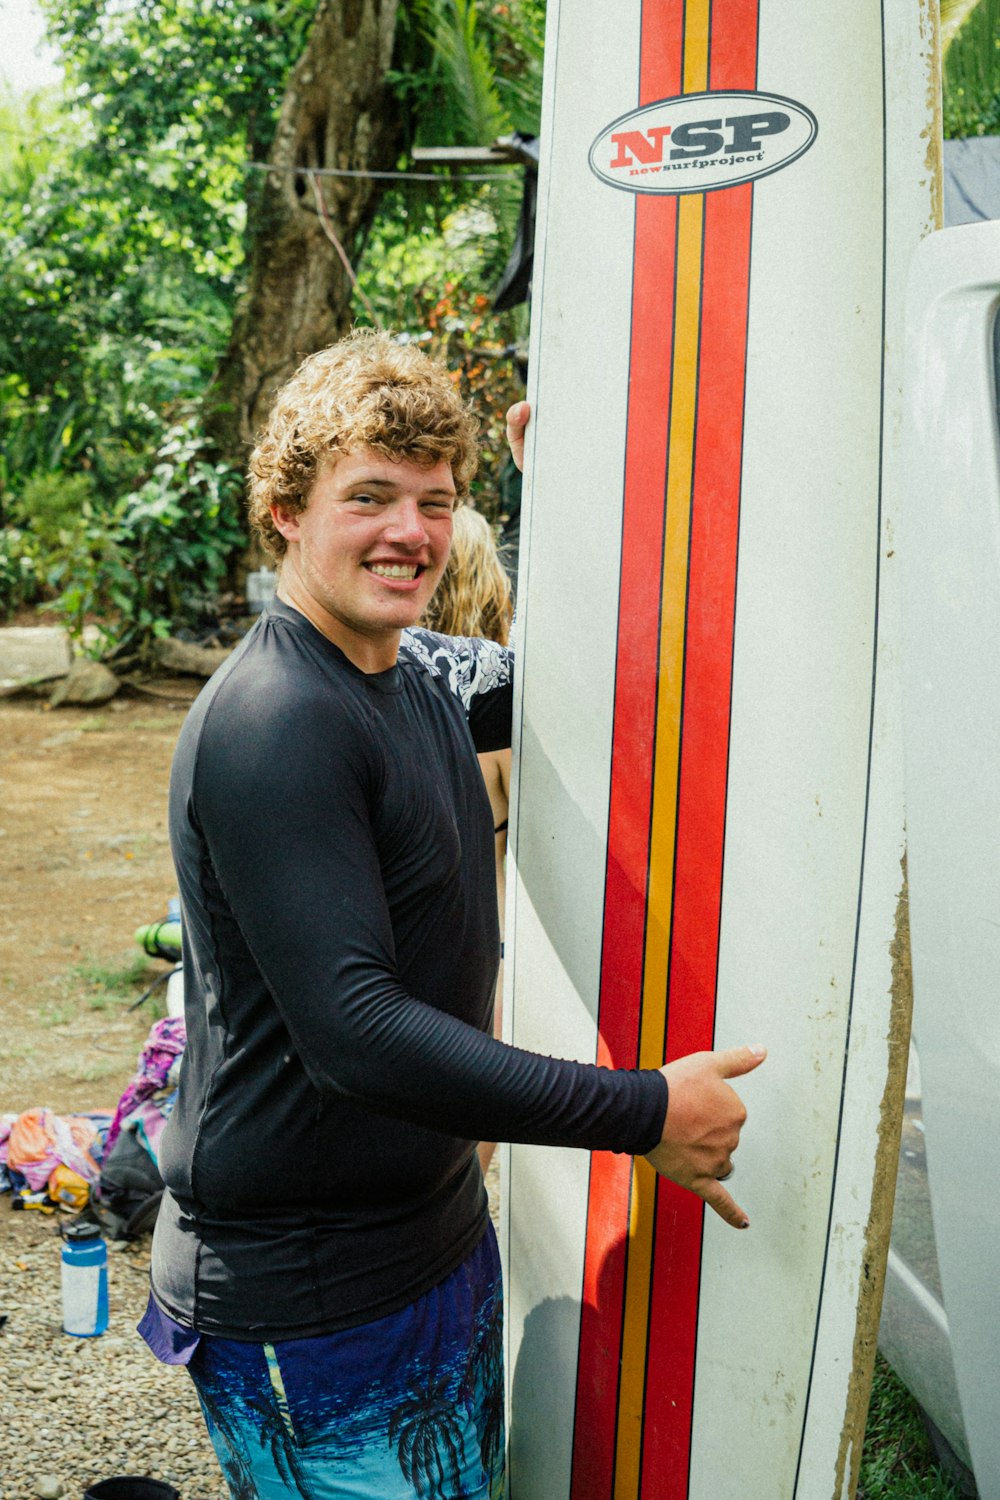 a man holding a surfboard next to a van